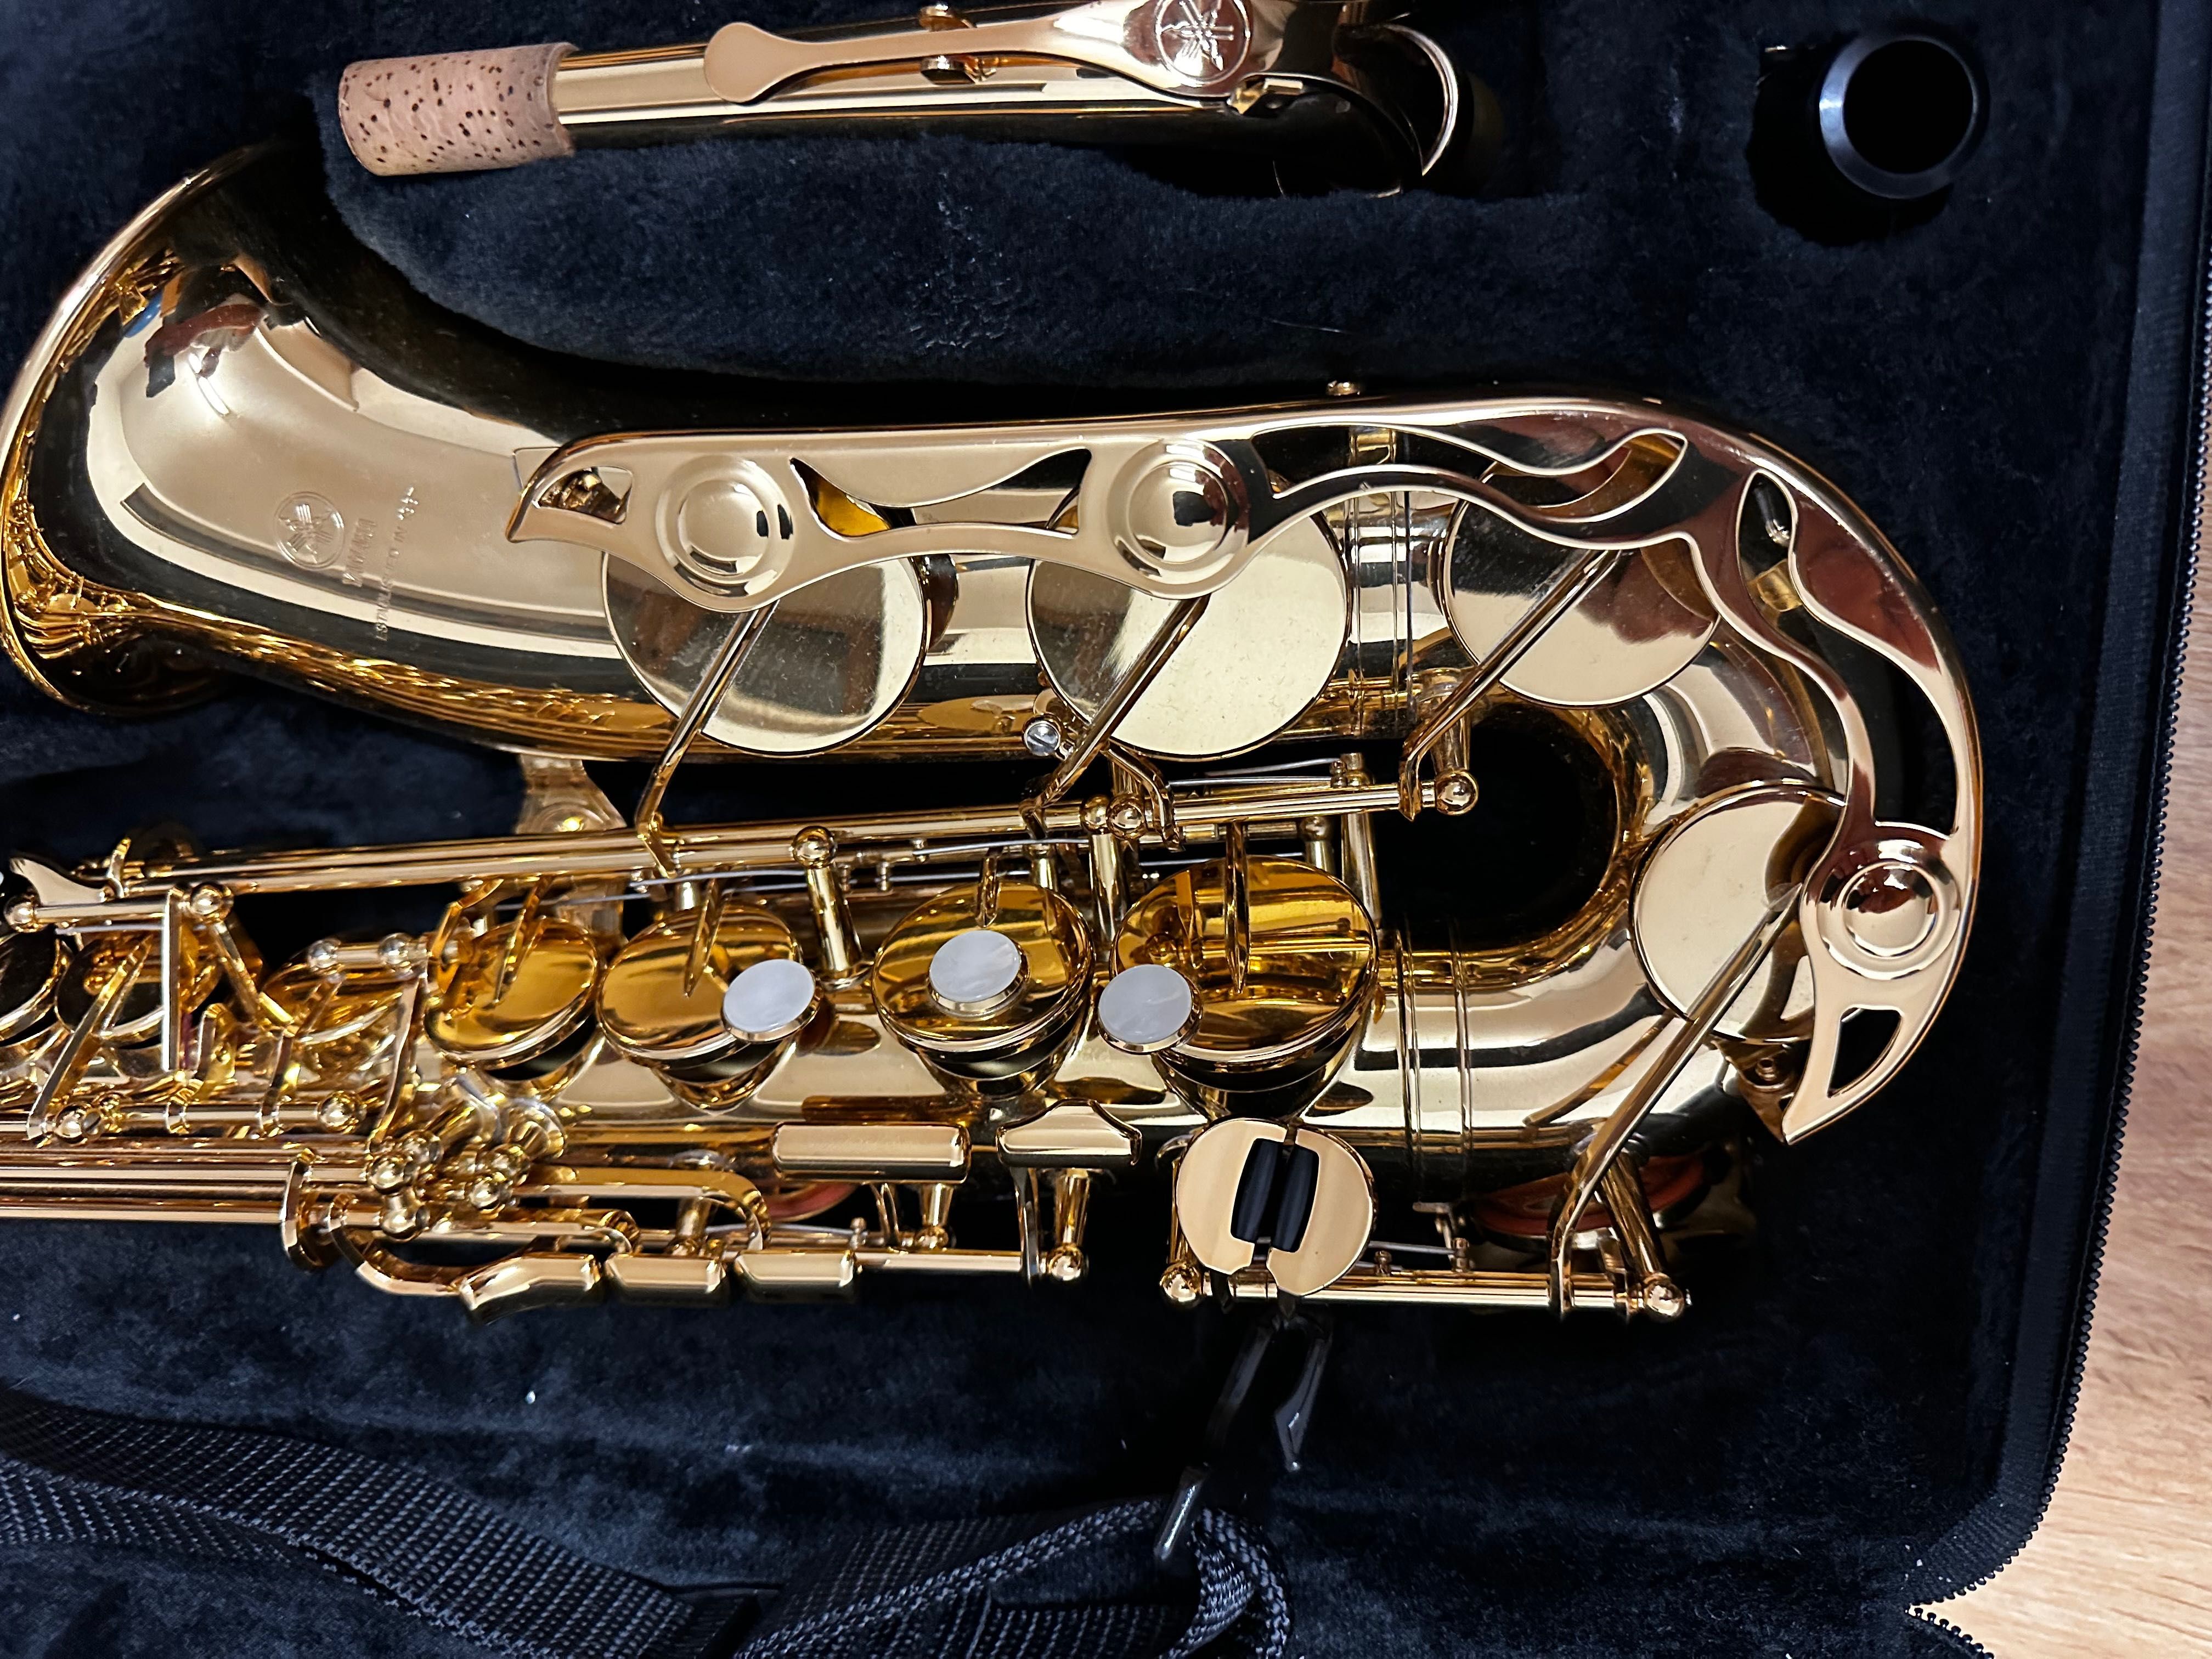 Saksofon Yamaha YAS 280